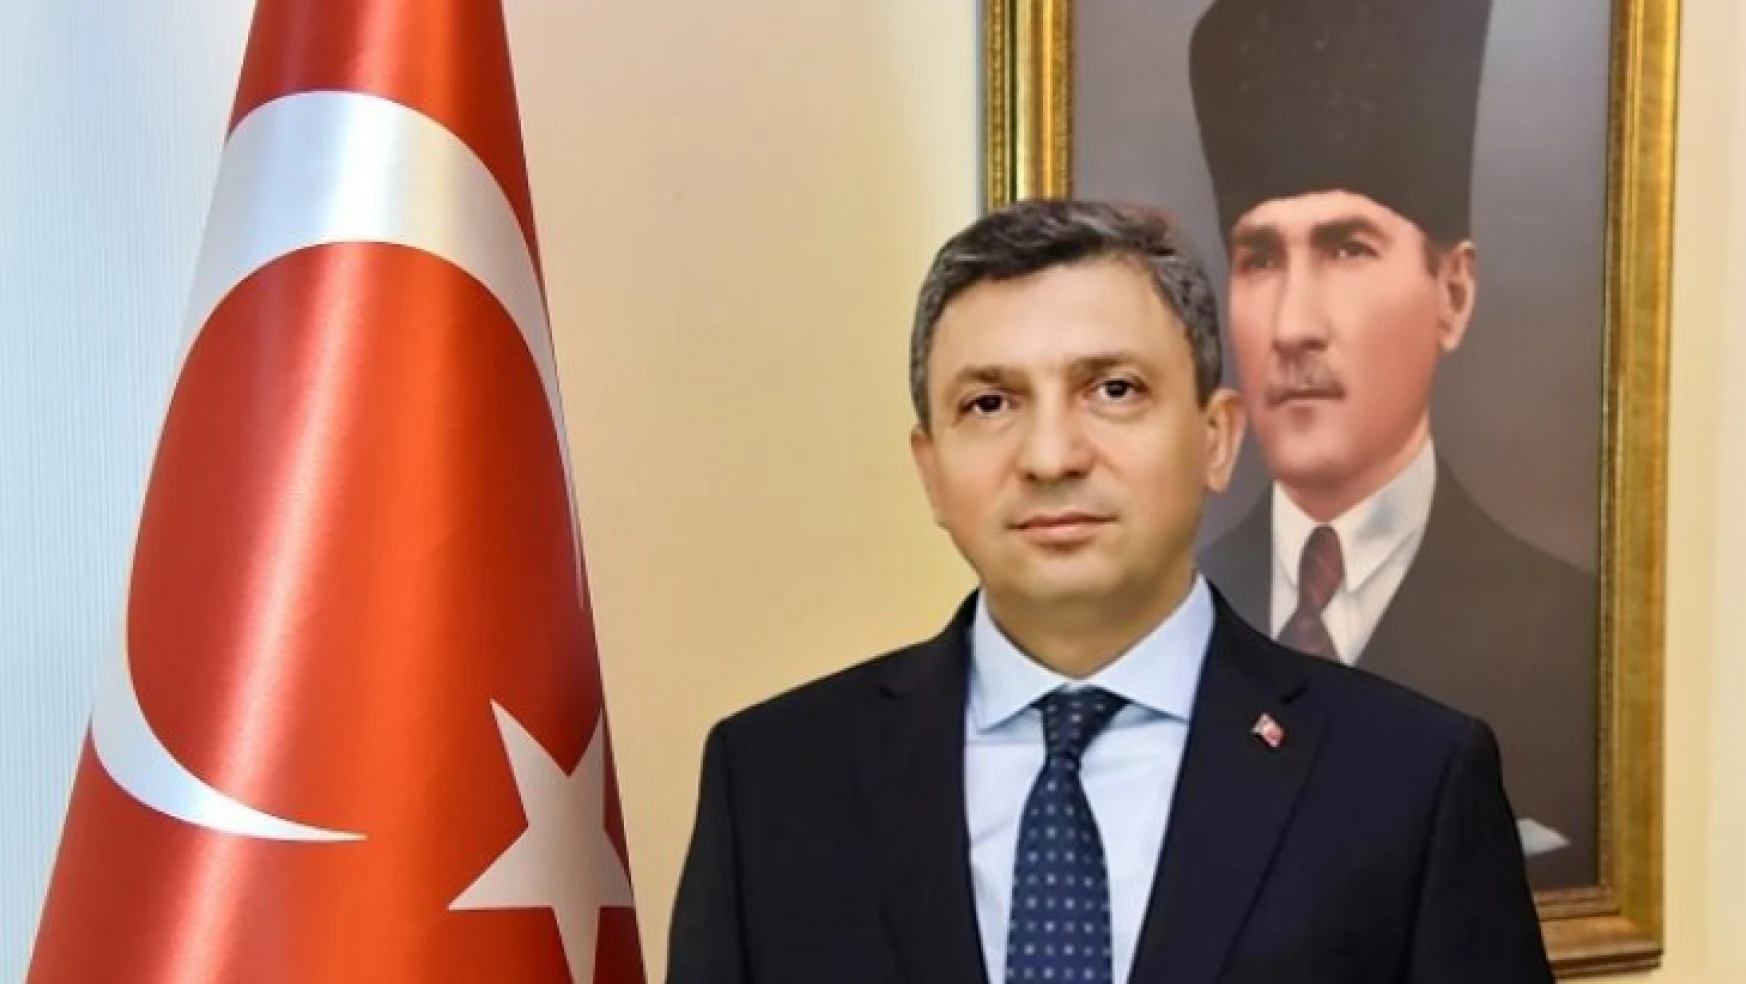 Vali Şahin Yeni Malatyaspor yönetimi ile ilgili 3-4 kişi ile görüştük